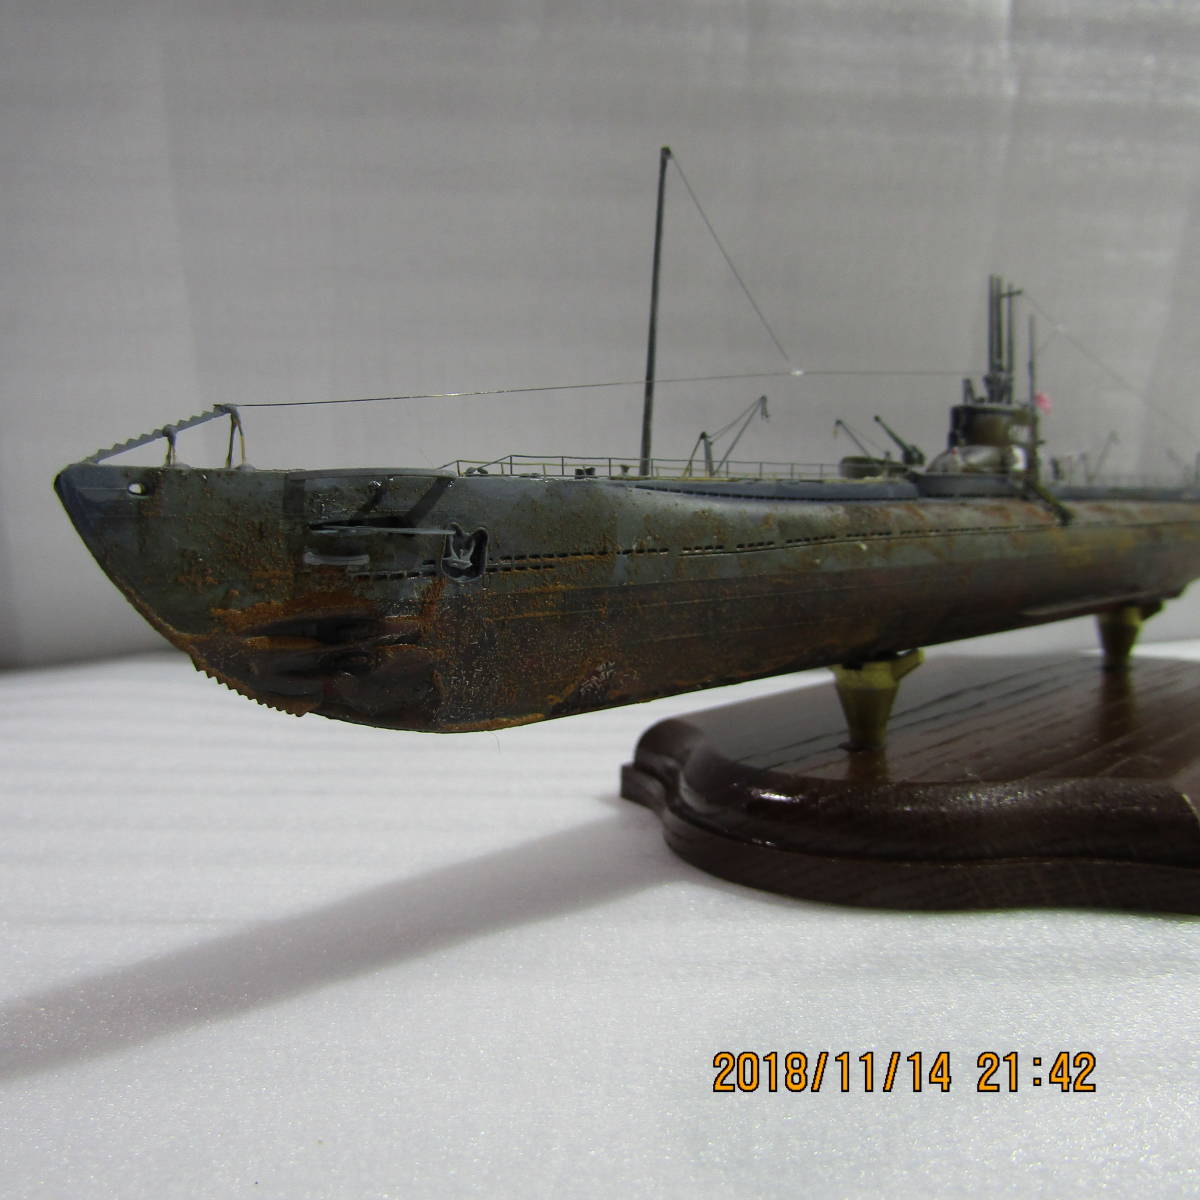 1/350日本海軍潛艇Haiku Univ。類型6 a 168（實際規格）/成品 原文:1/350 日本海軍潜水艦 海大6型a 伊168 (リアル仕様）/完成品